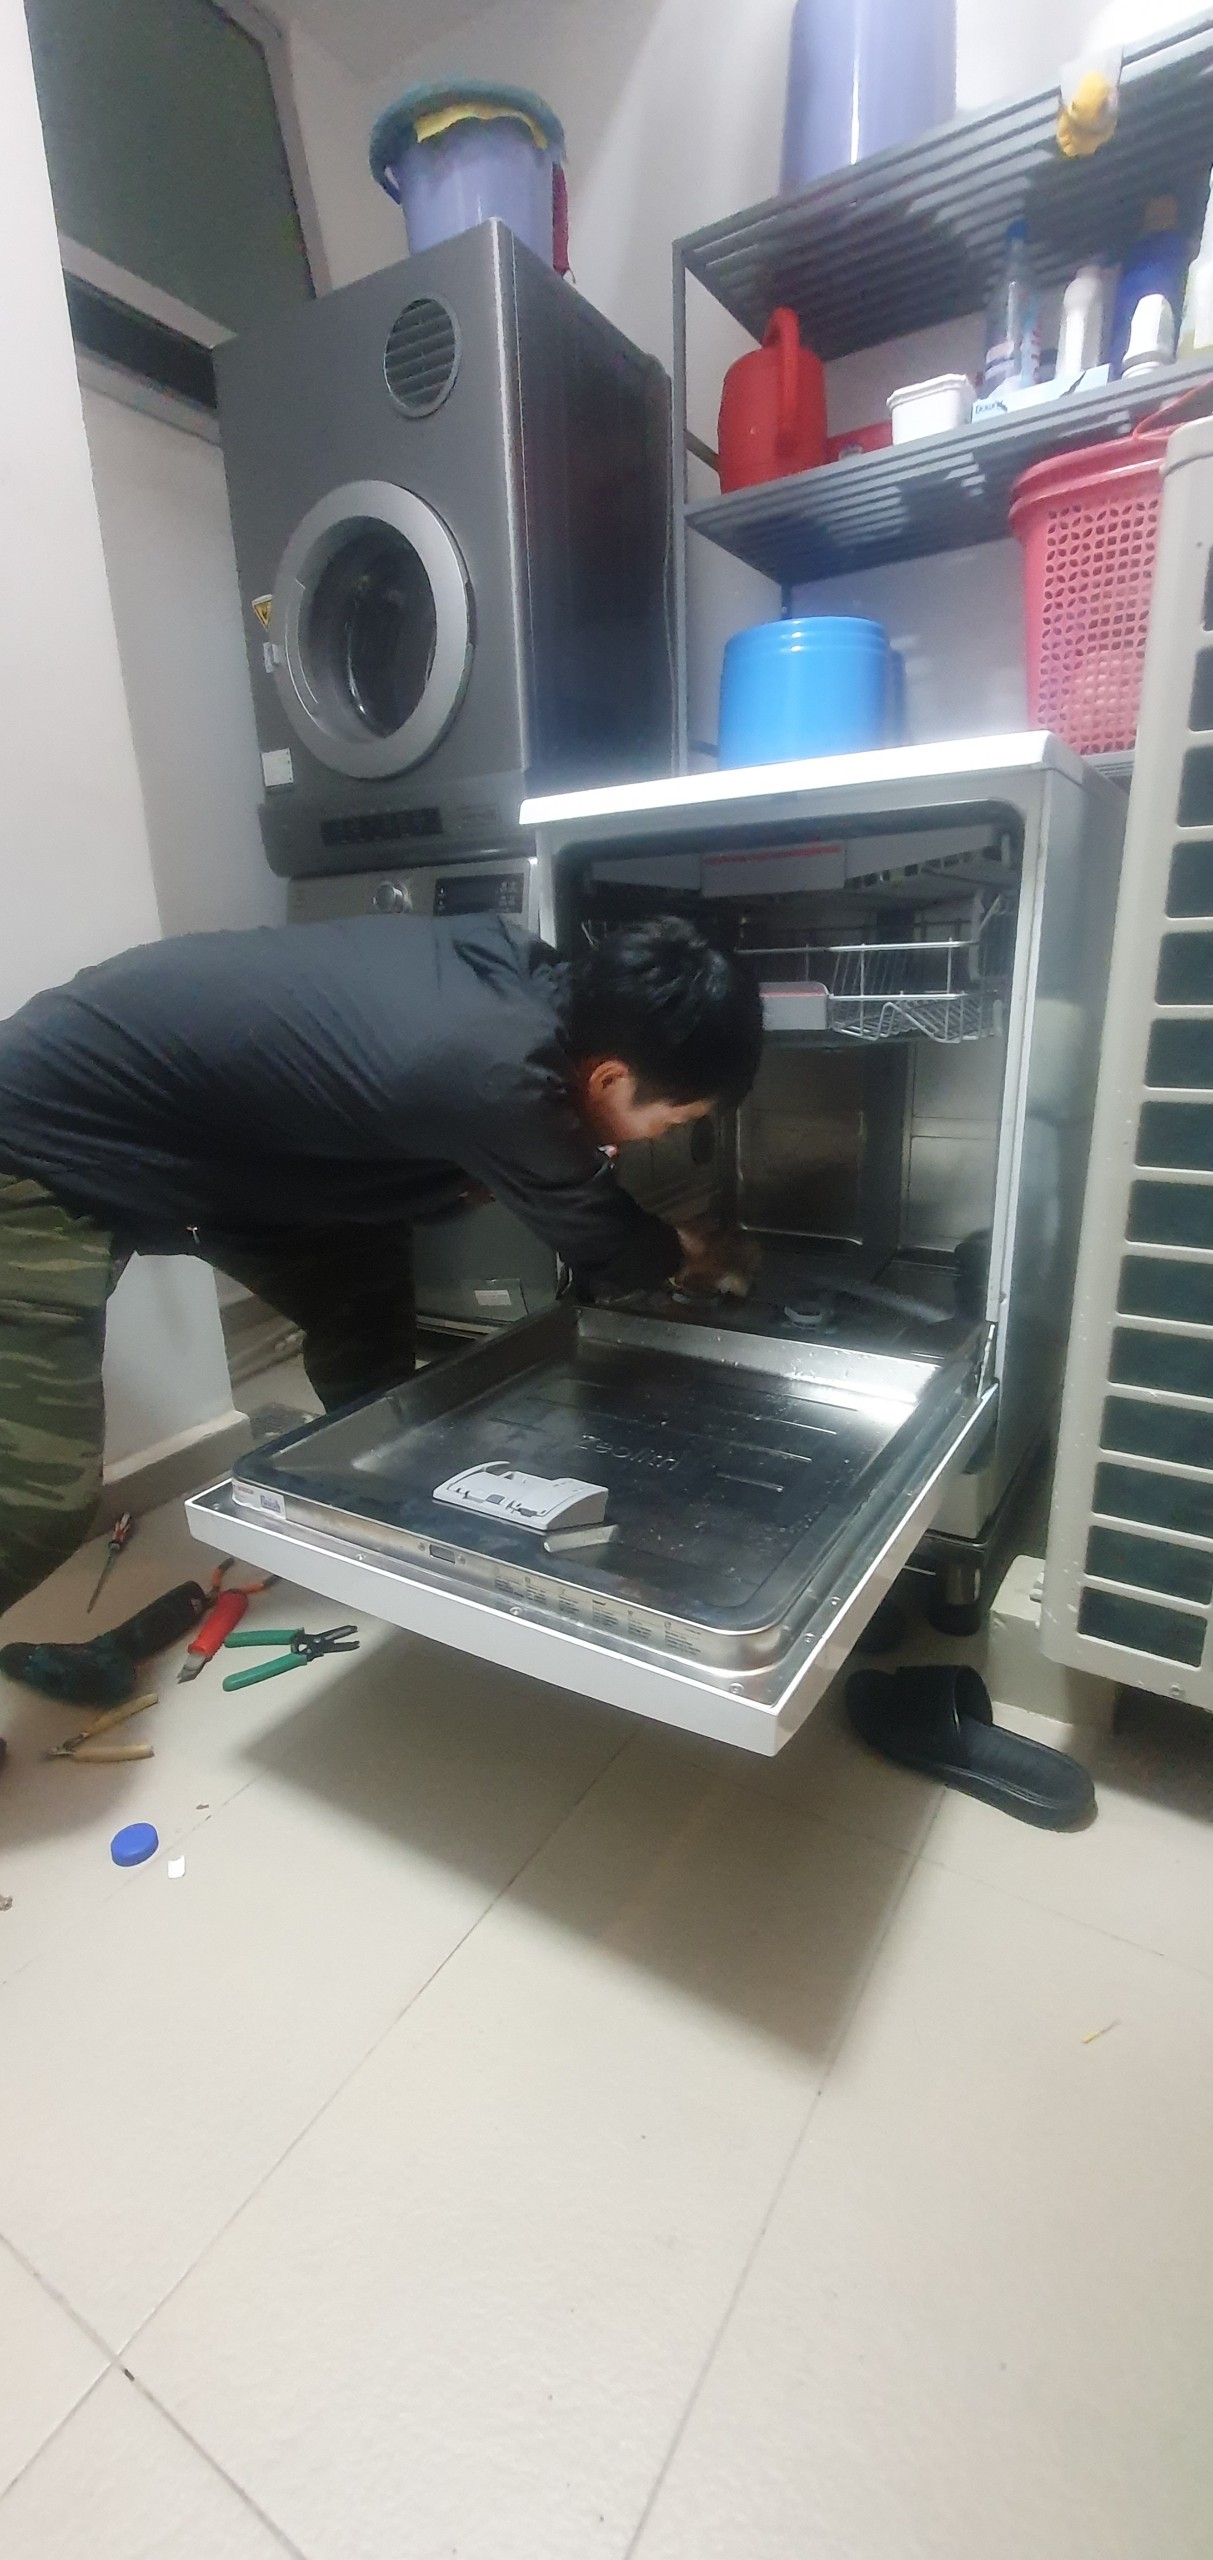 z4449111397564 2171007b1dd8ebe2746bb84bee128482 - Sửa máy rửa bát Bosch lỗi E81-00 tại nhà ở Sài Gòn